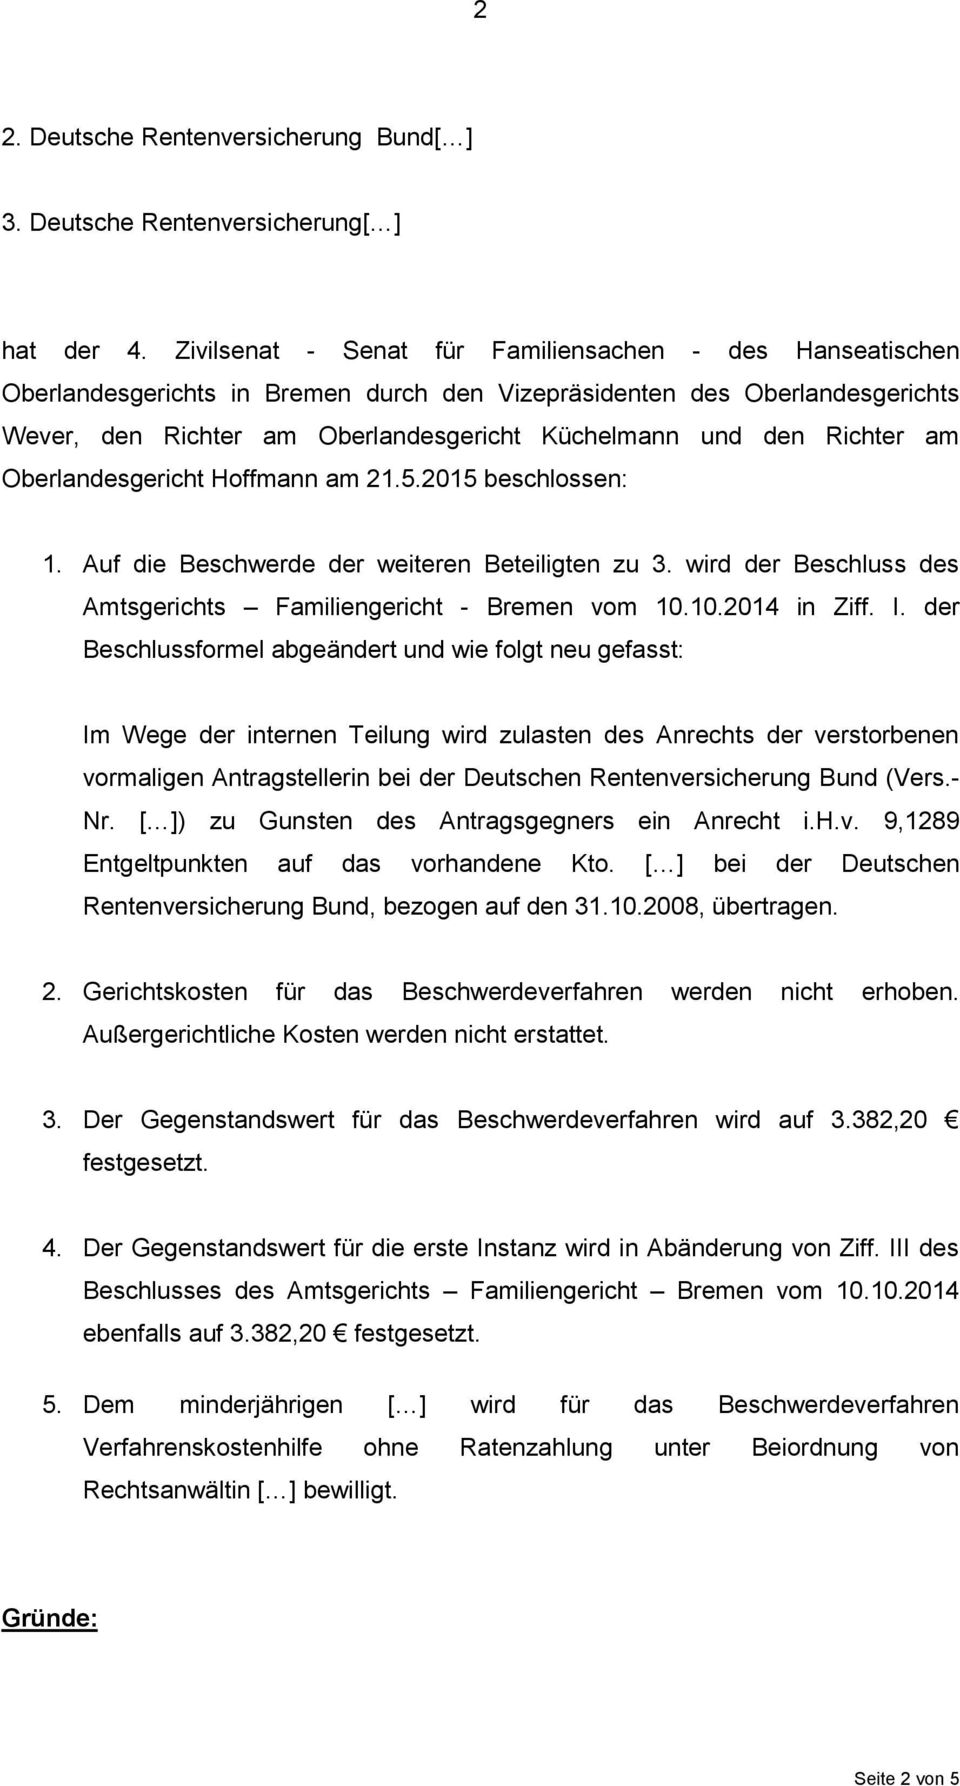 Richter am Oberlandesgericht Hoffmann am 21.5.2015 beschlossen: 1. Auf die Beschwerde der weiteren Beteiligten zu 3. wird der Beschluss des Amtsgerichts Familiengericht - Bremen vom 10.10.2014 in Ziff.